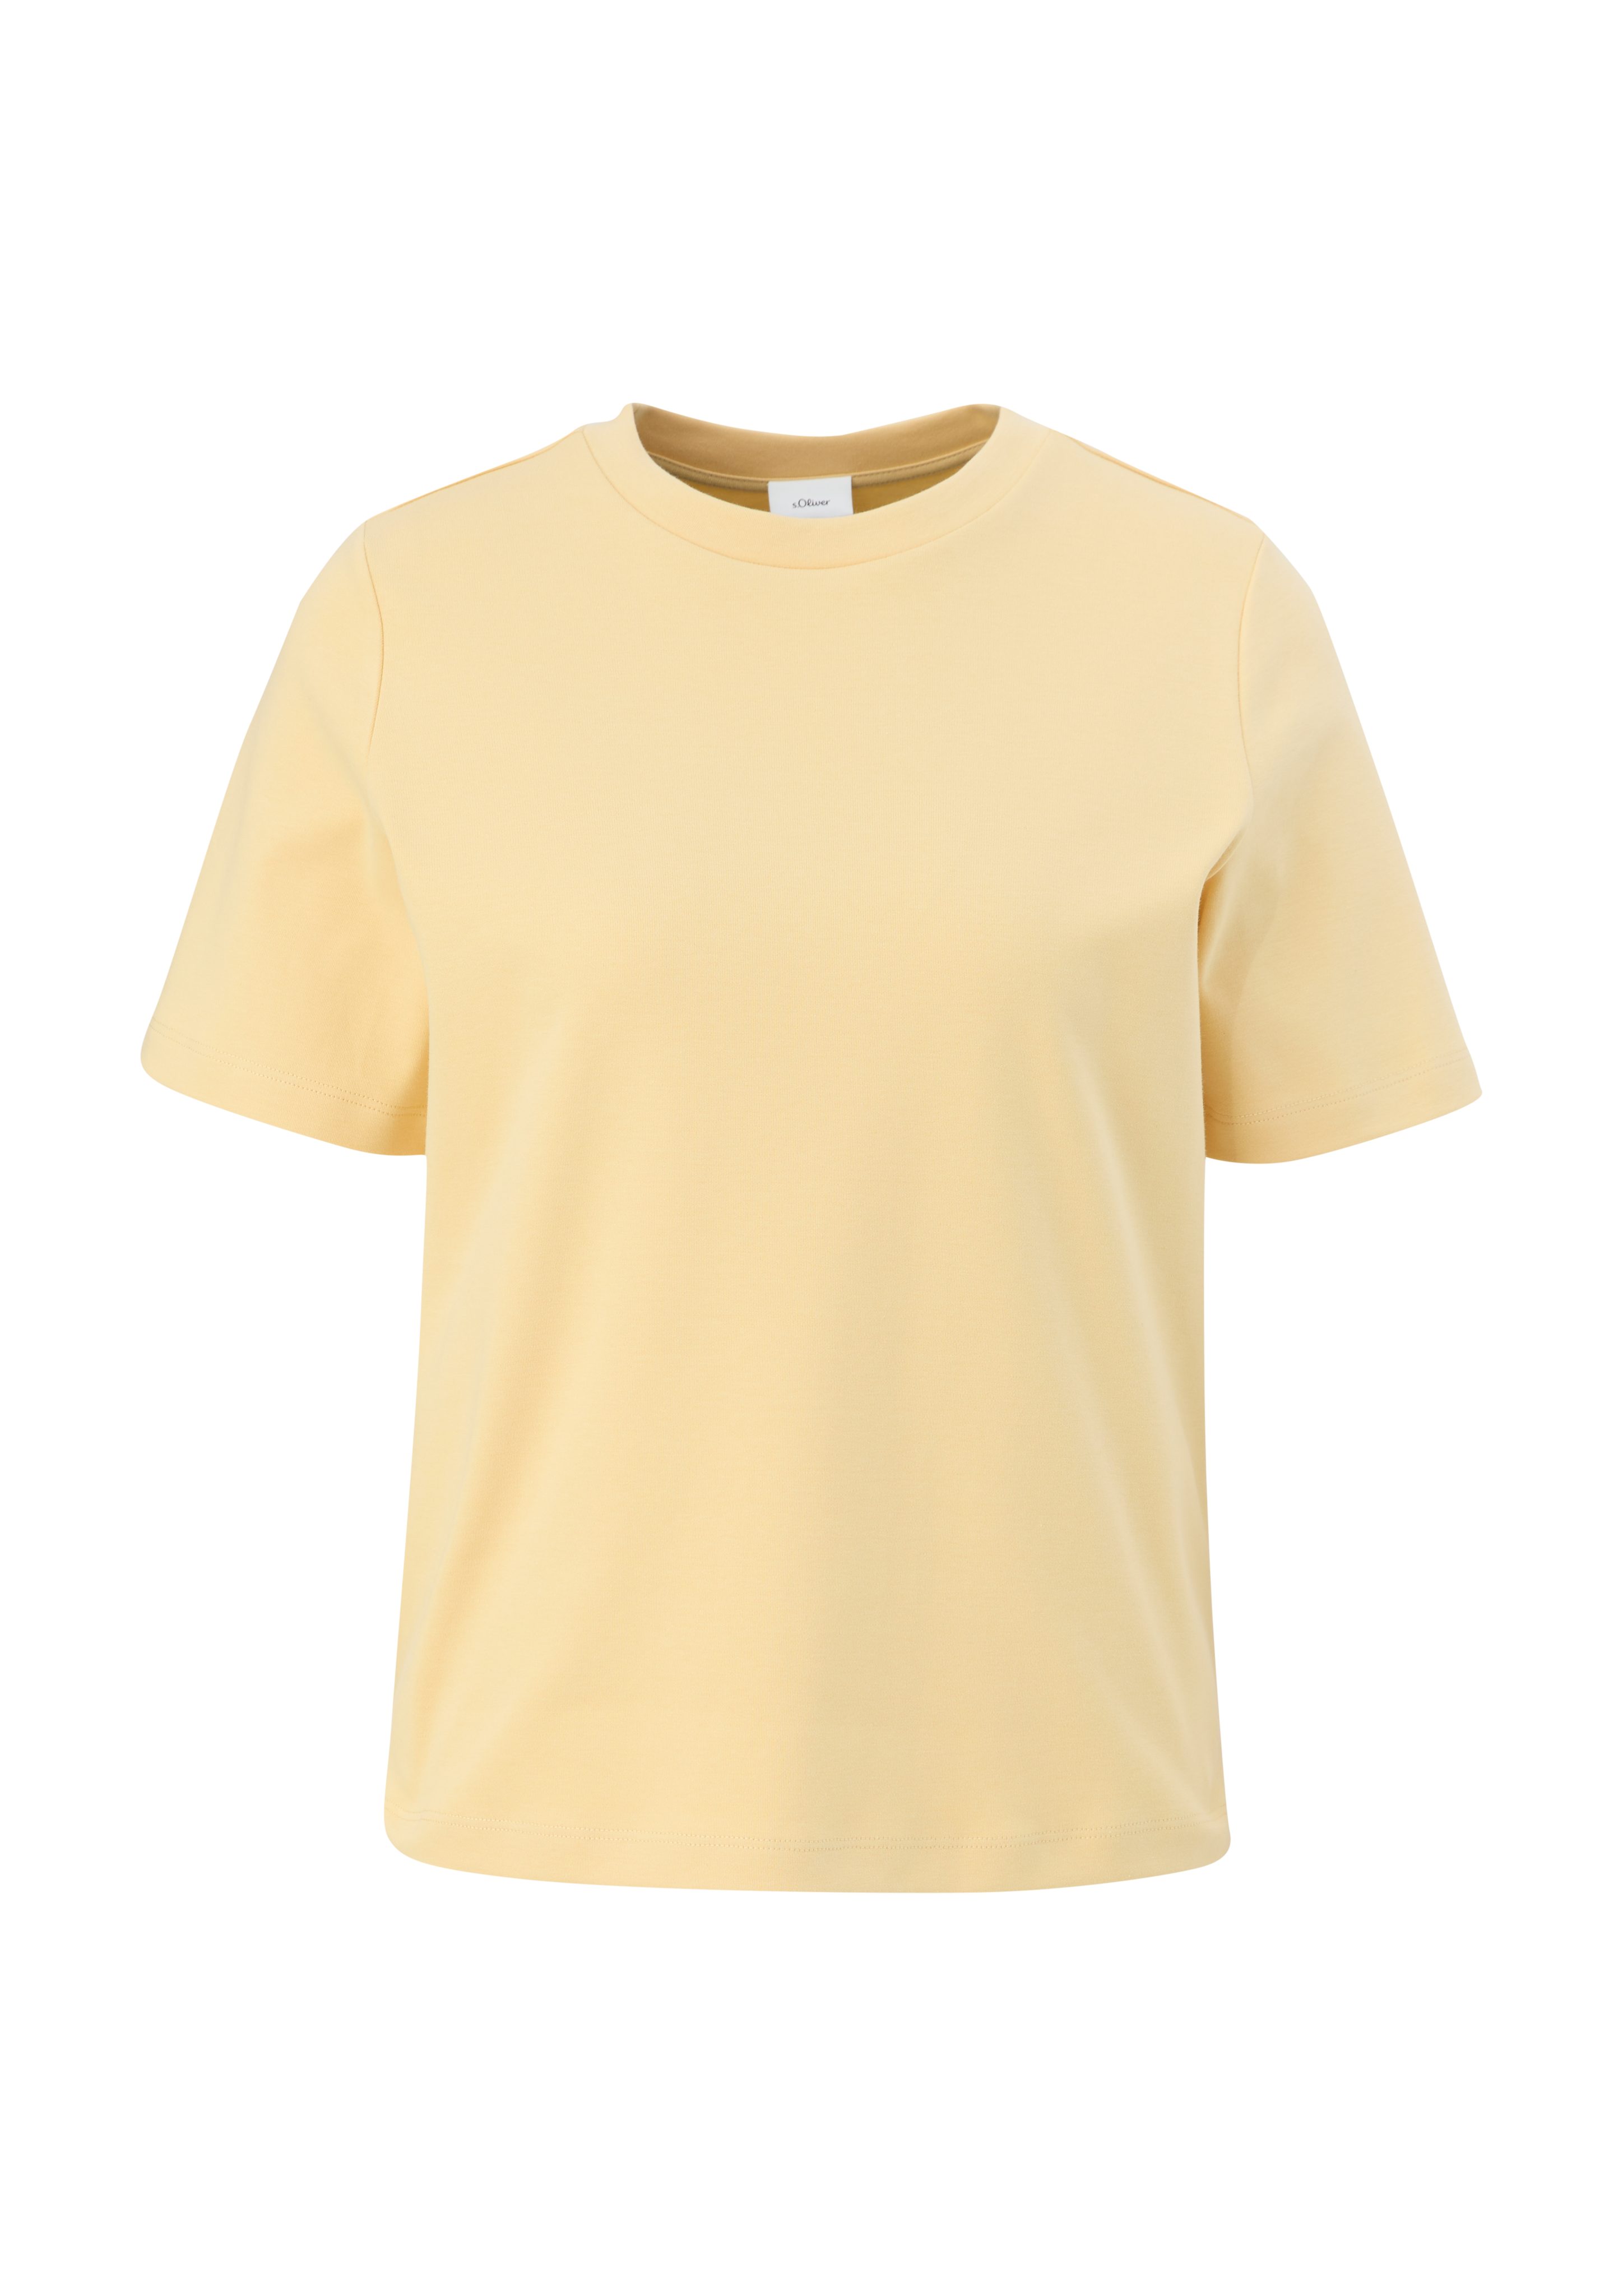 s.Oliver BLACK LABEL Kurzarmshirt T-Shirt Stickerei vanille aus reiner Baumwolle